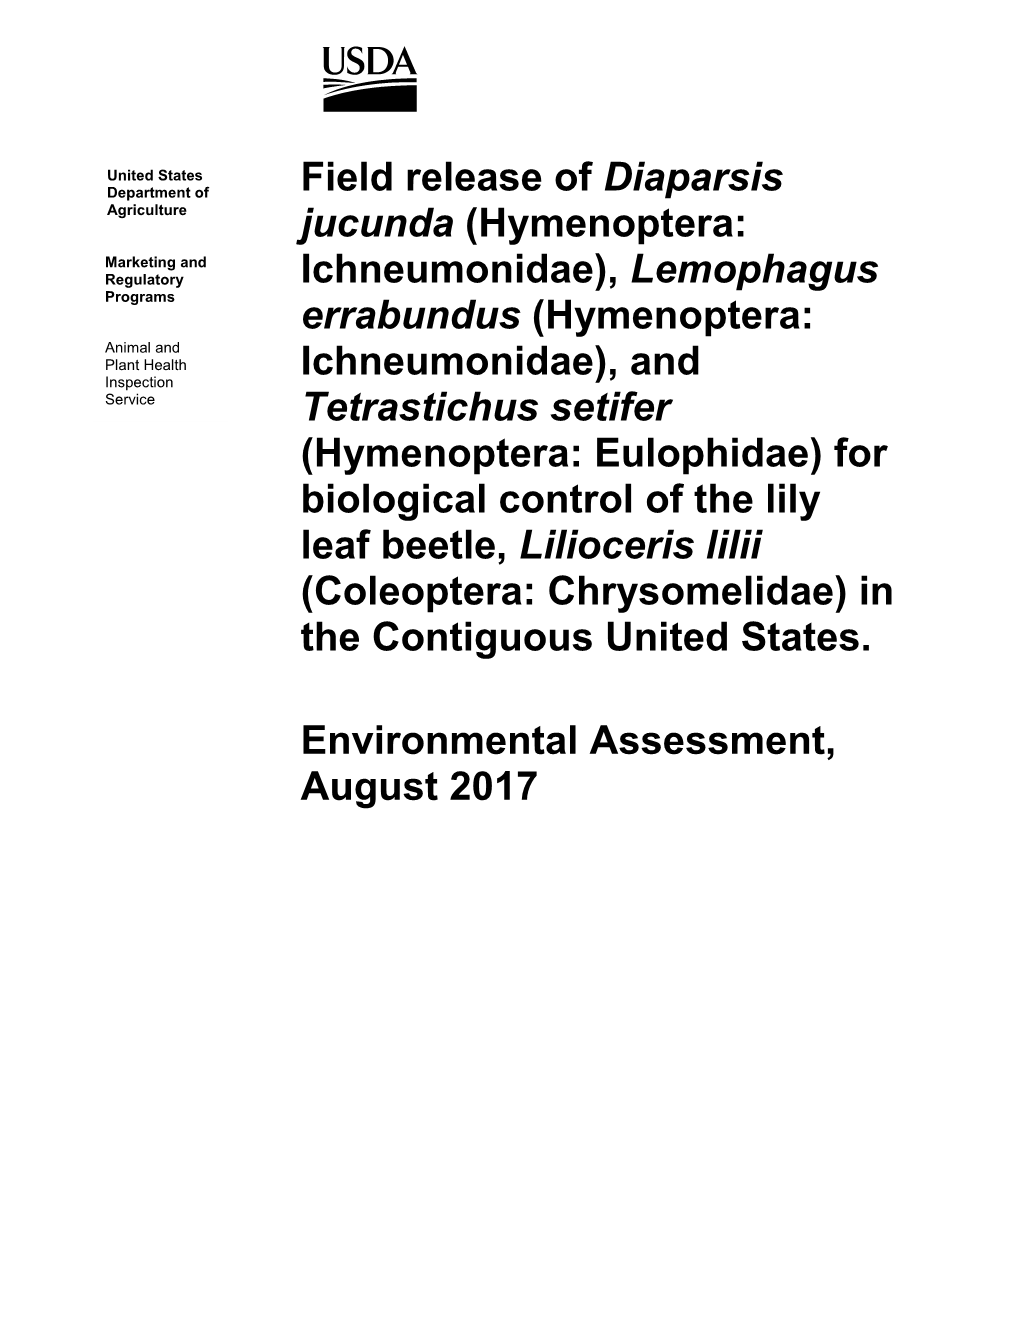 Field Release of Diaparsis Jucunda